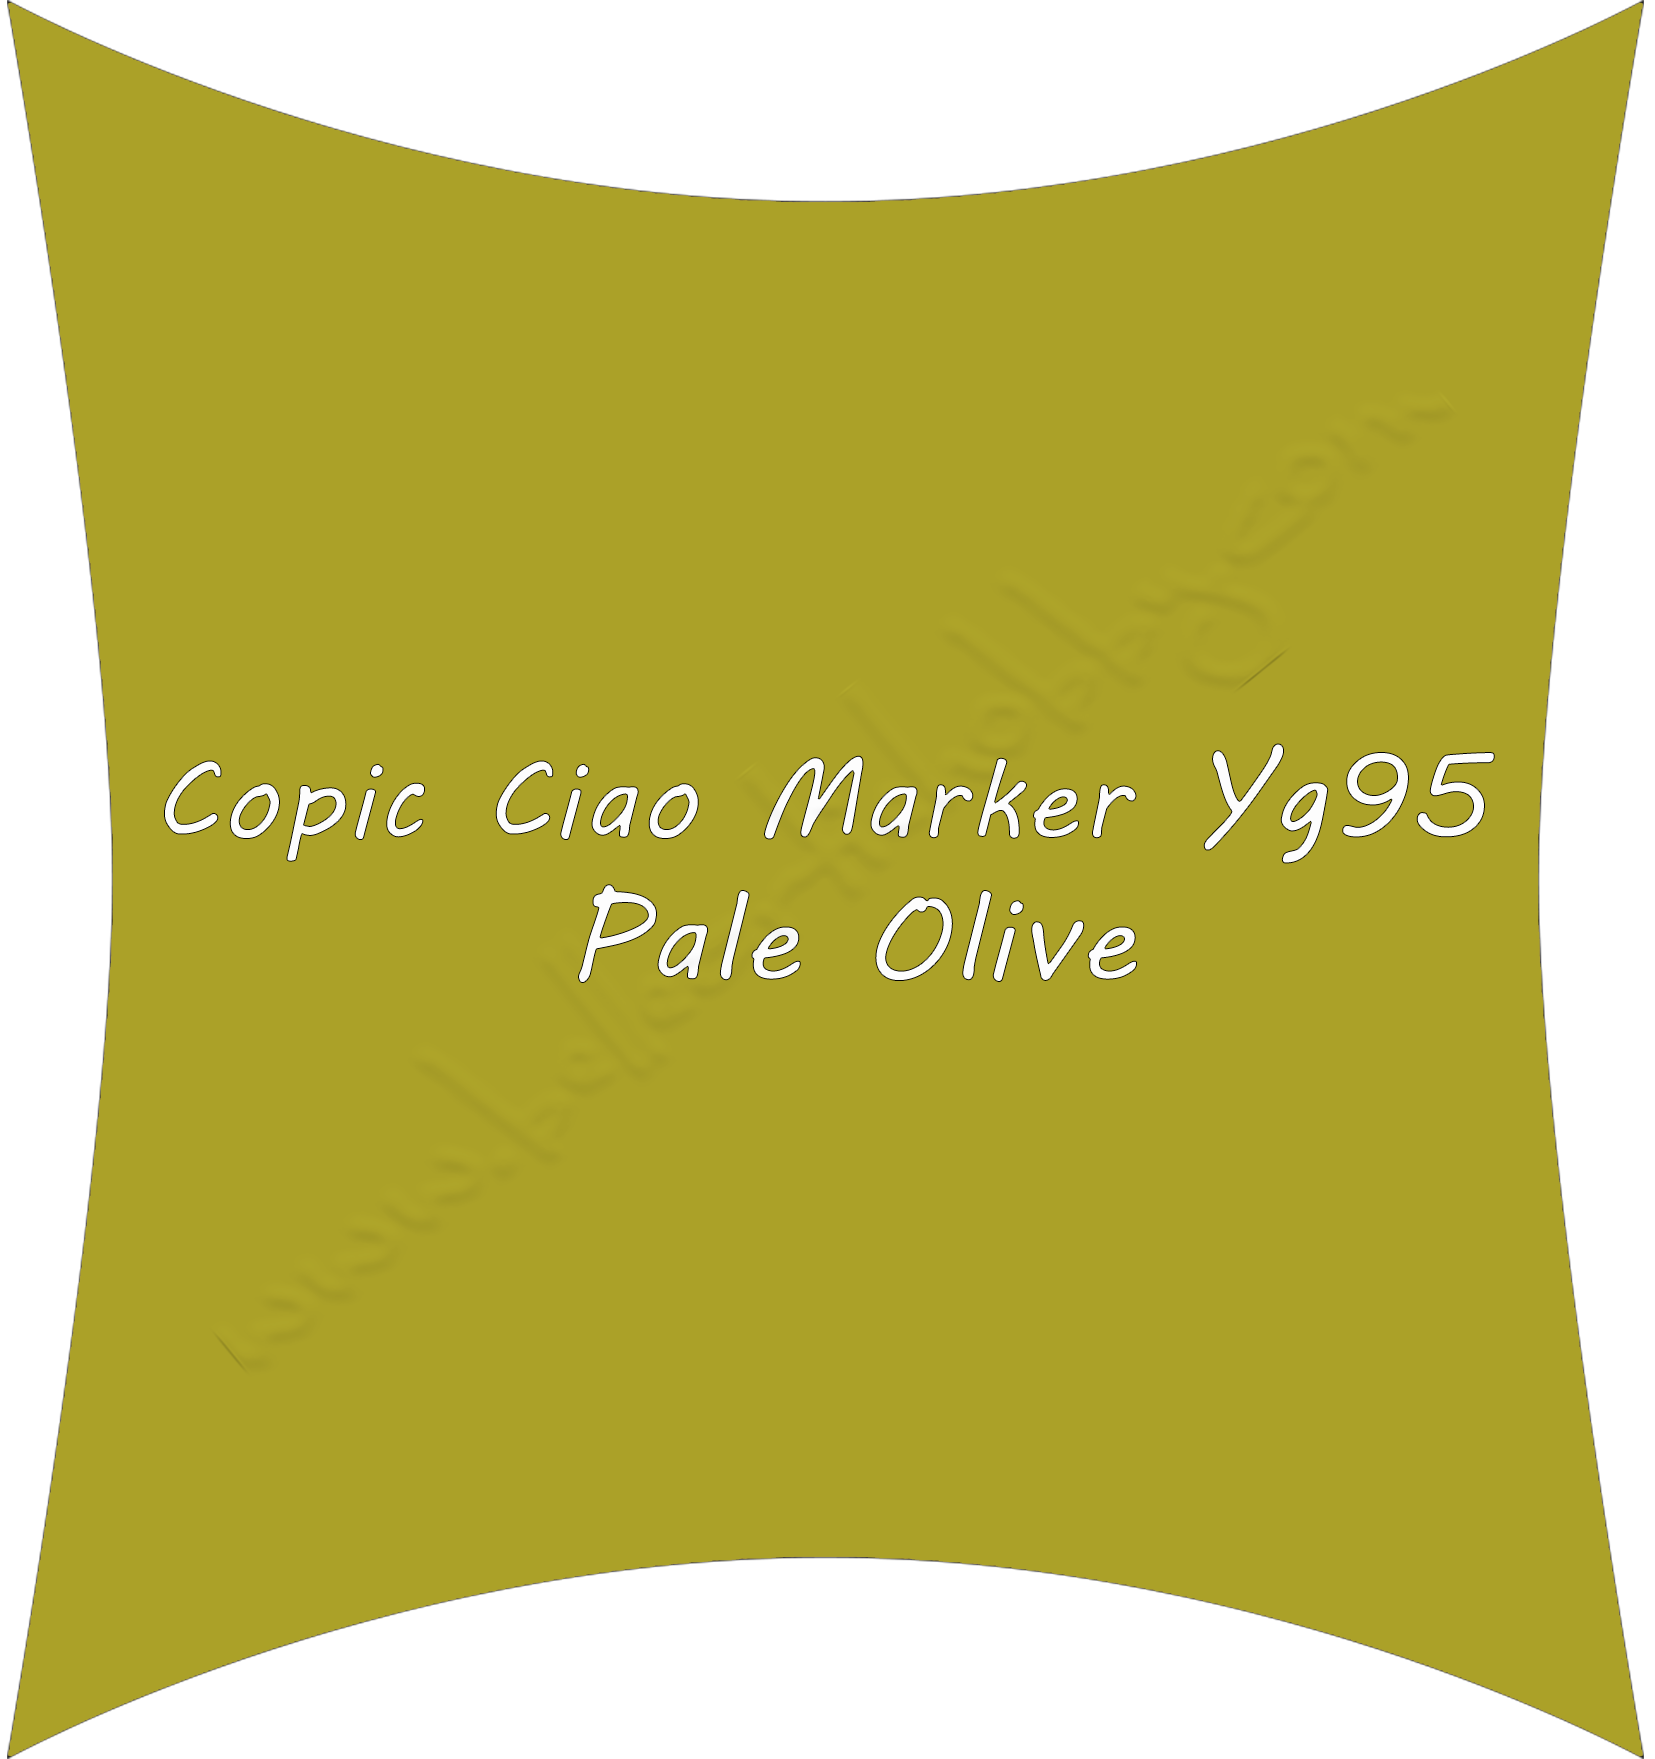 Yg95 Pale Olive